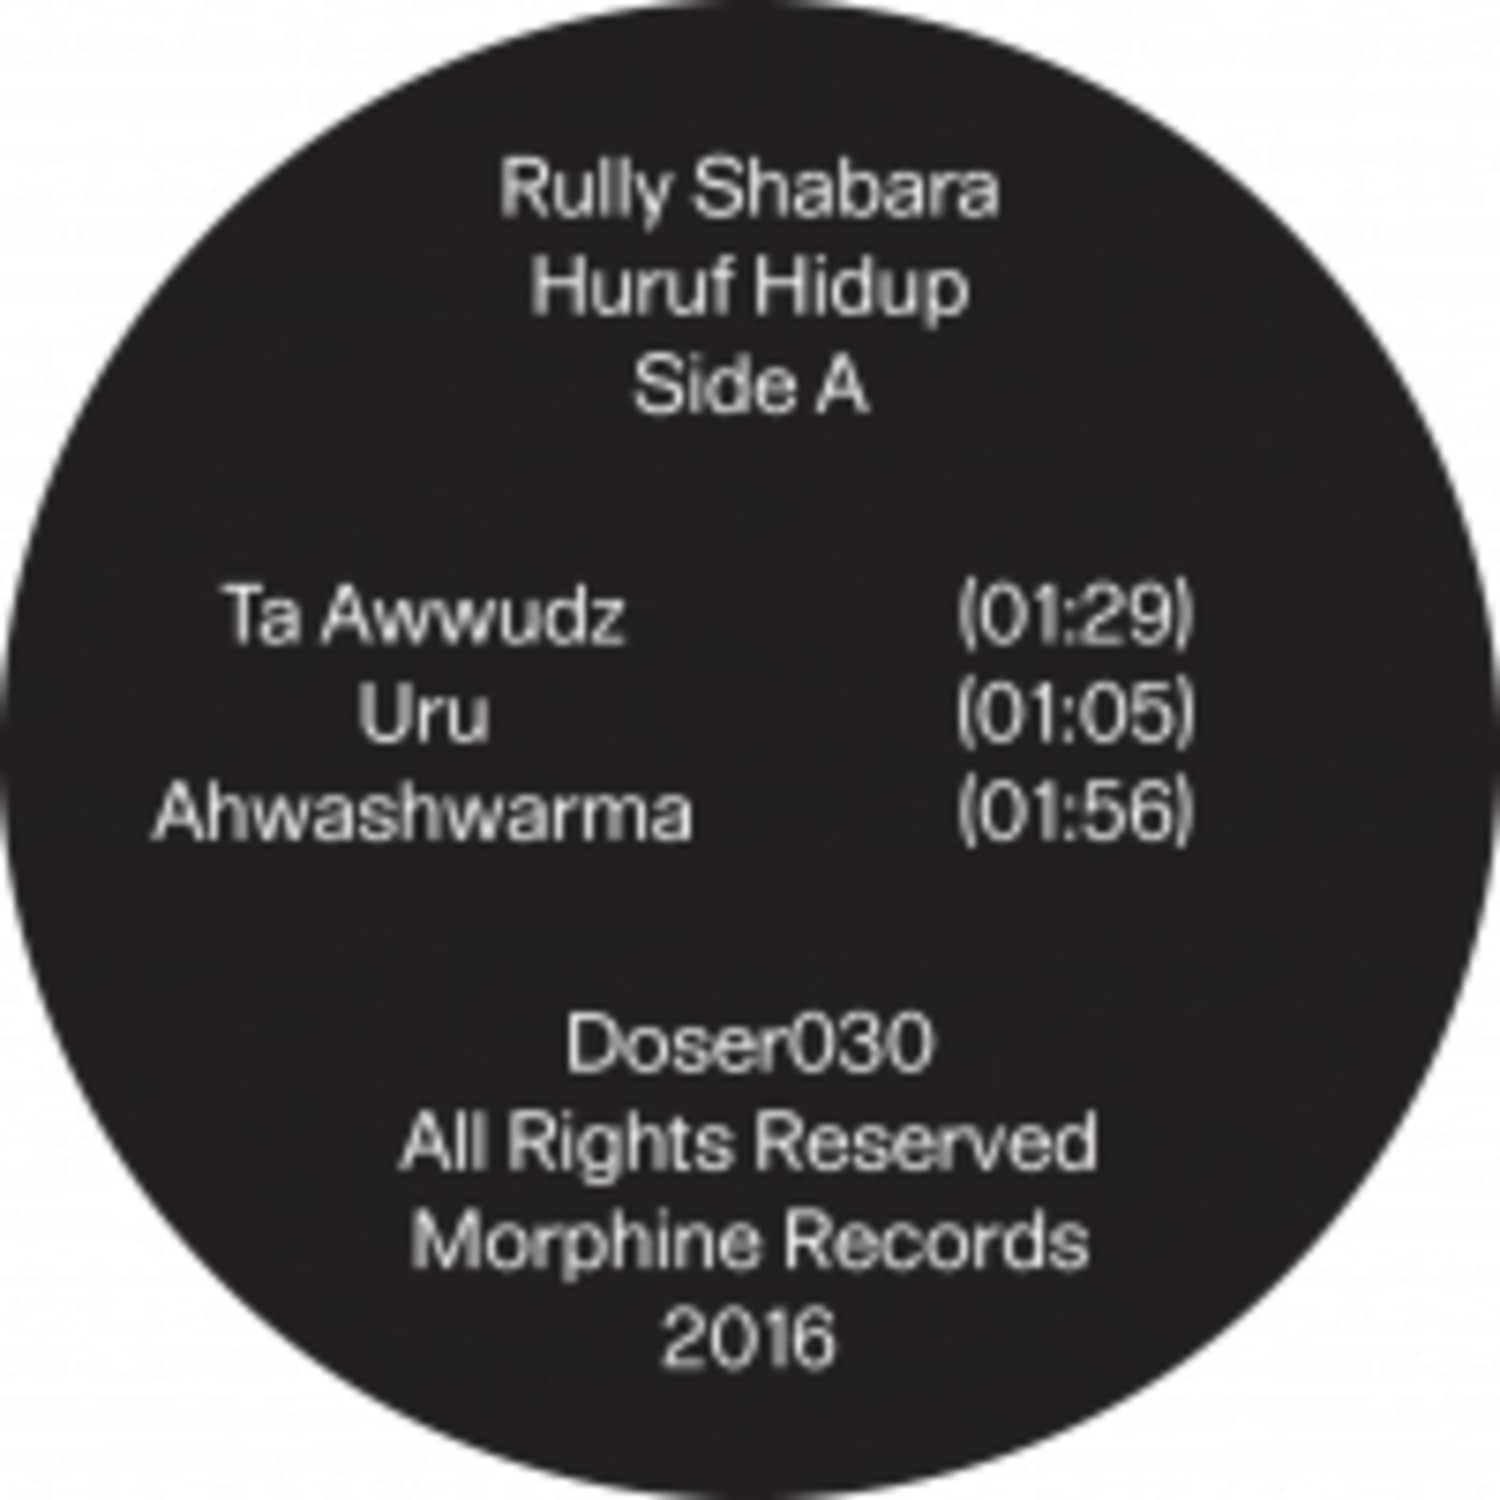 Rully Shabara - HURUF HIDUP 